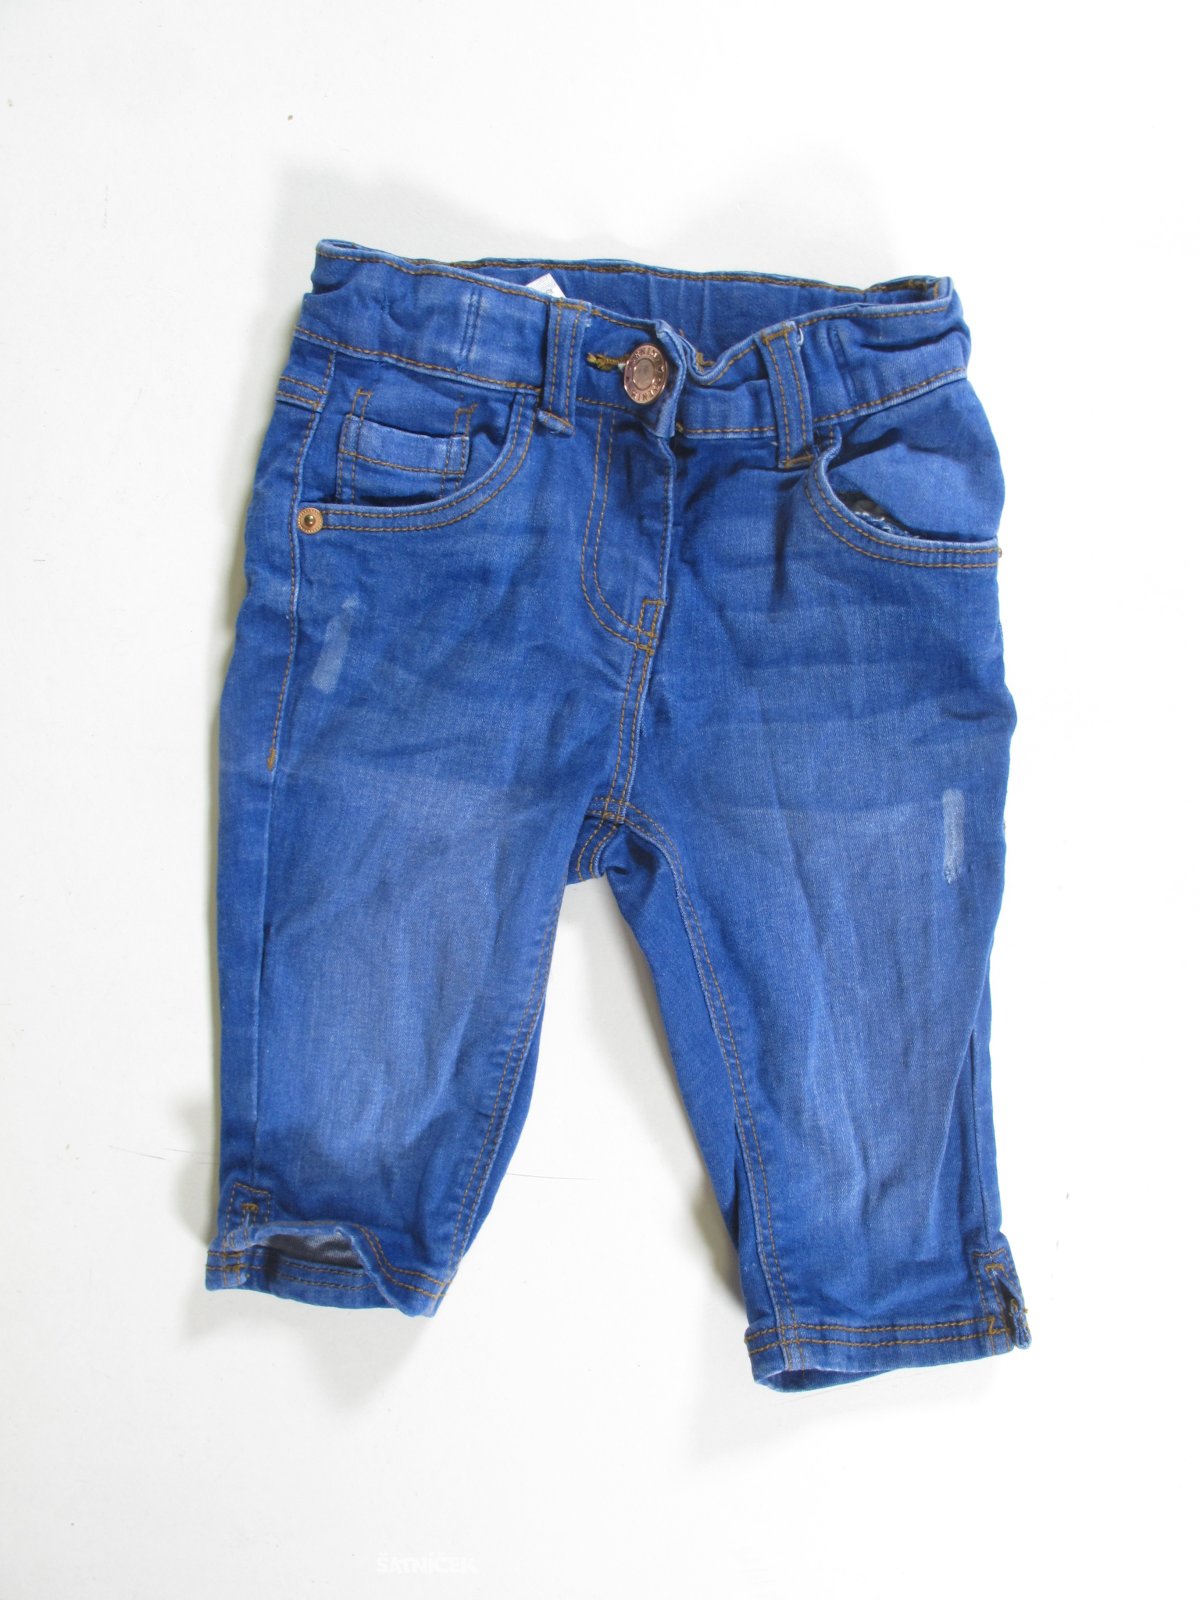 Džínové 3/4 kalhoty modré secondhand